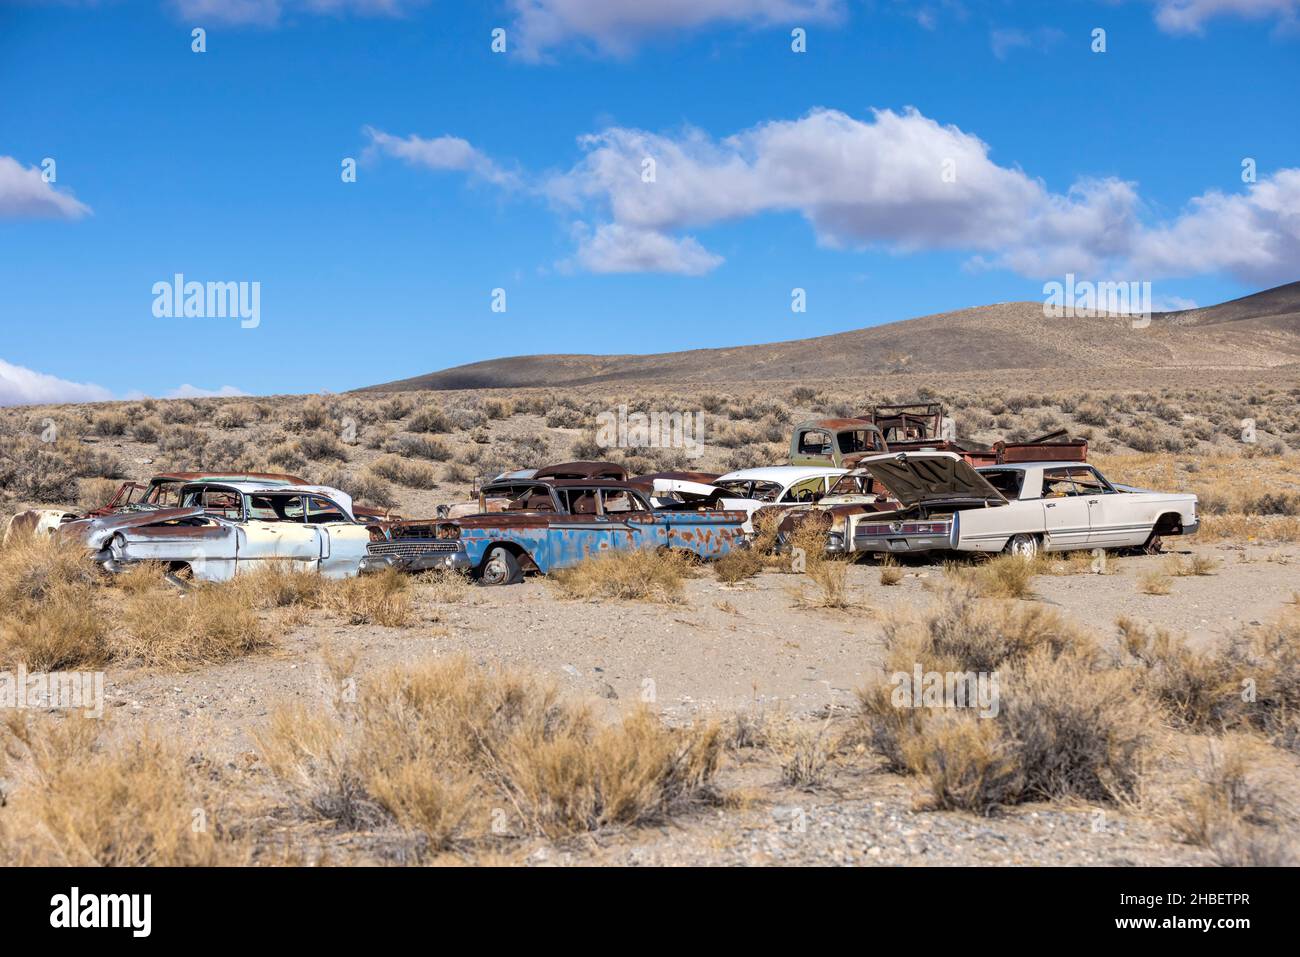 El grupo de junkyard de viejos carros oxidados abandonados se sienta en el desierto podrido lejos Foto de stock